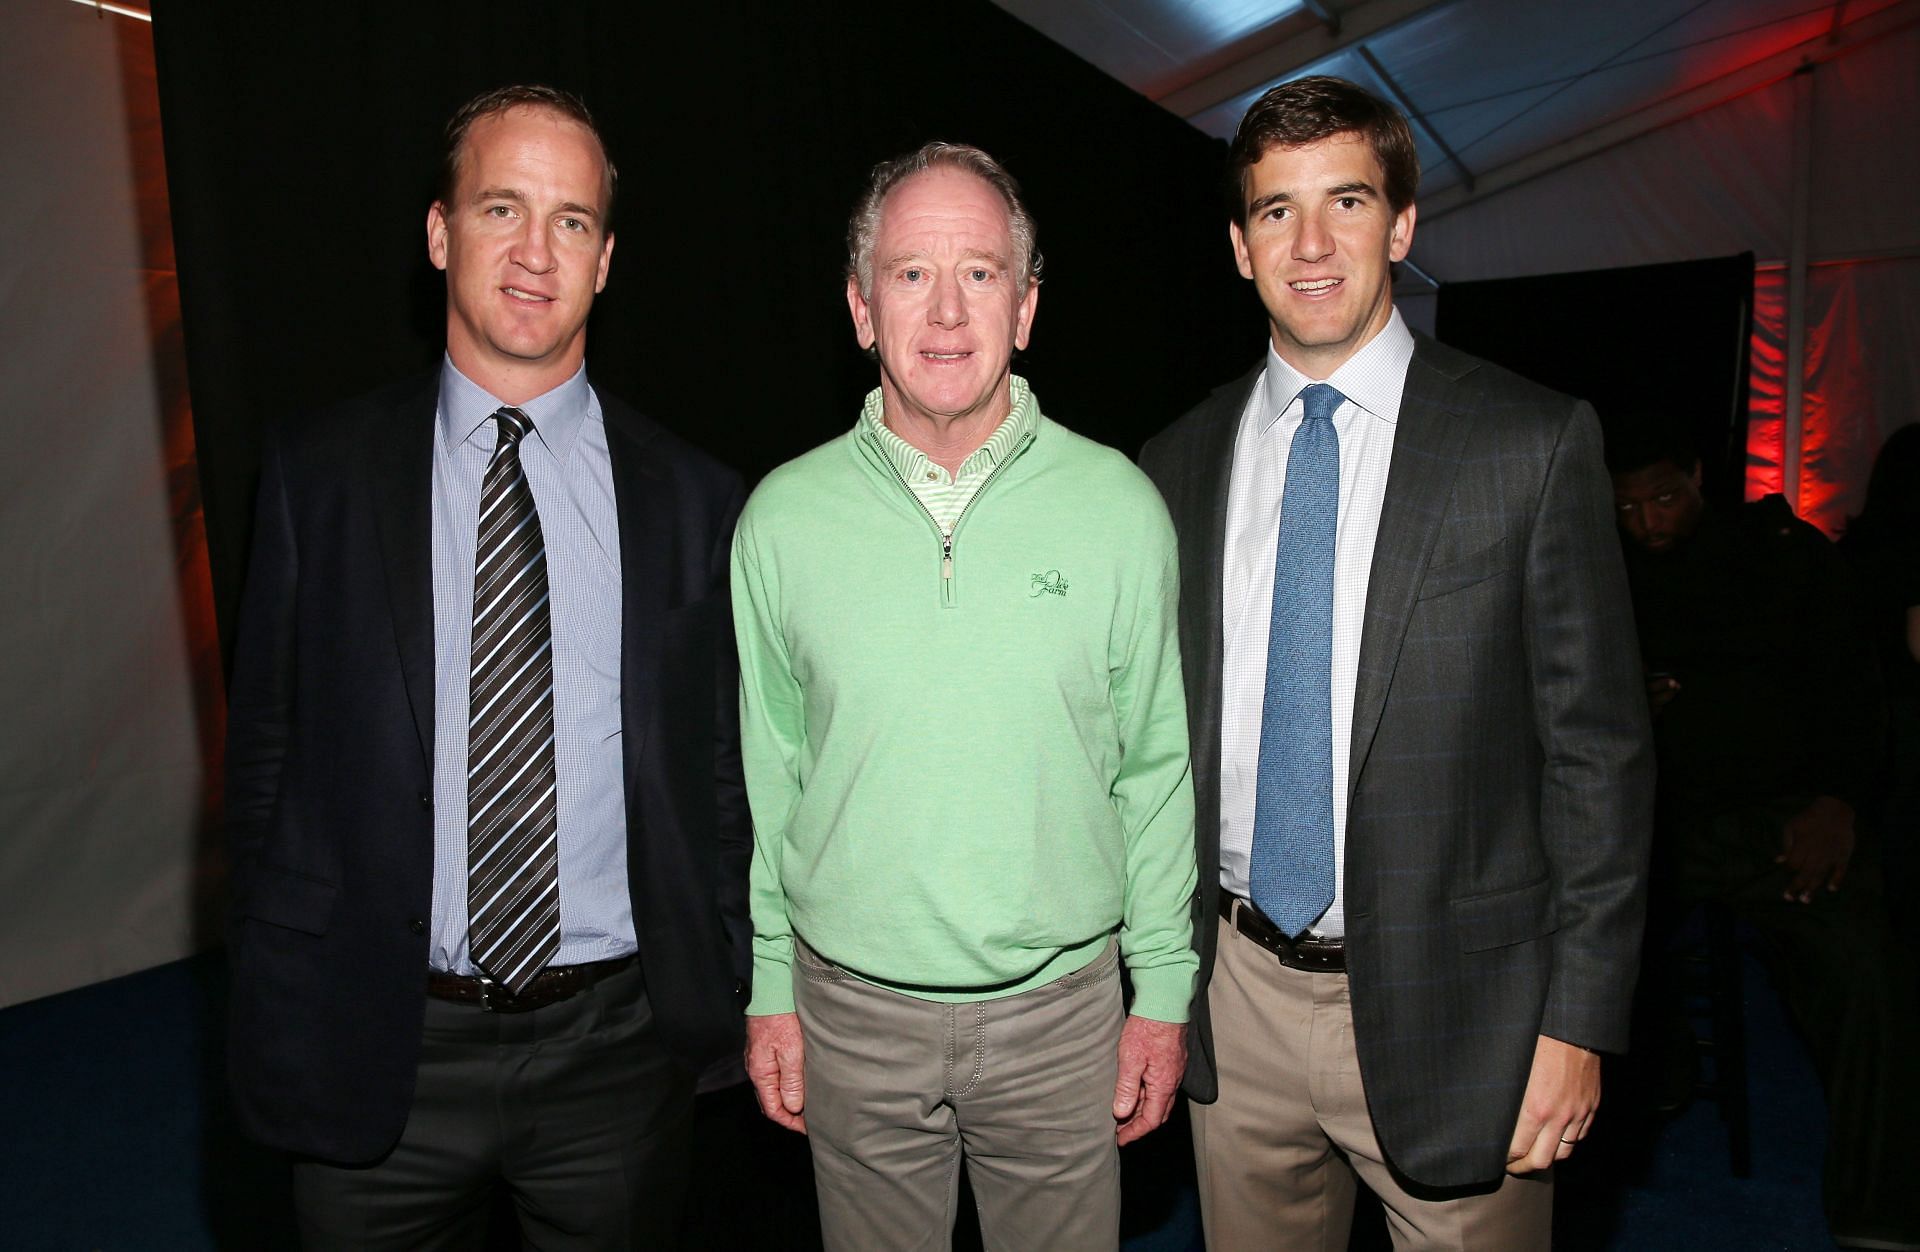 Former NFL quarterbacks Peyton Manning, Archie Manning, and Eli Manning